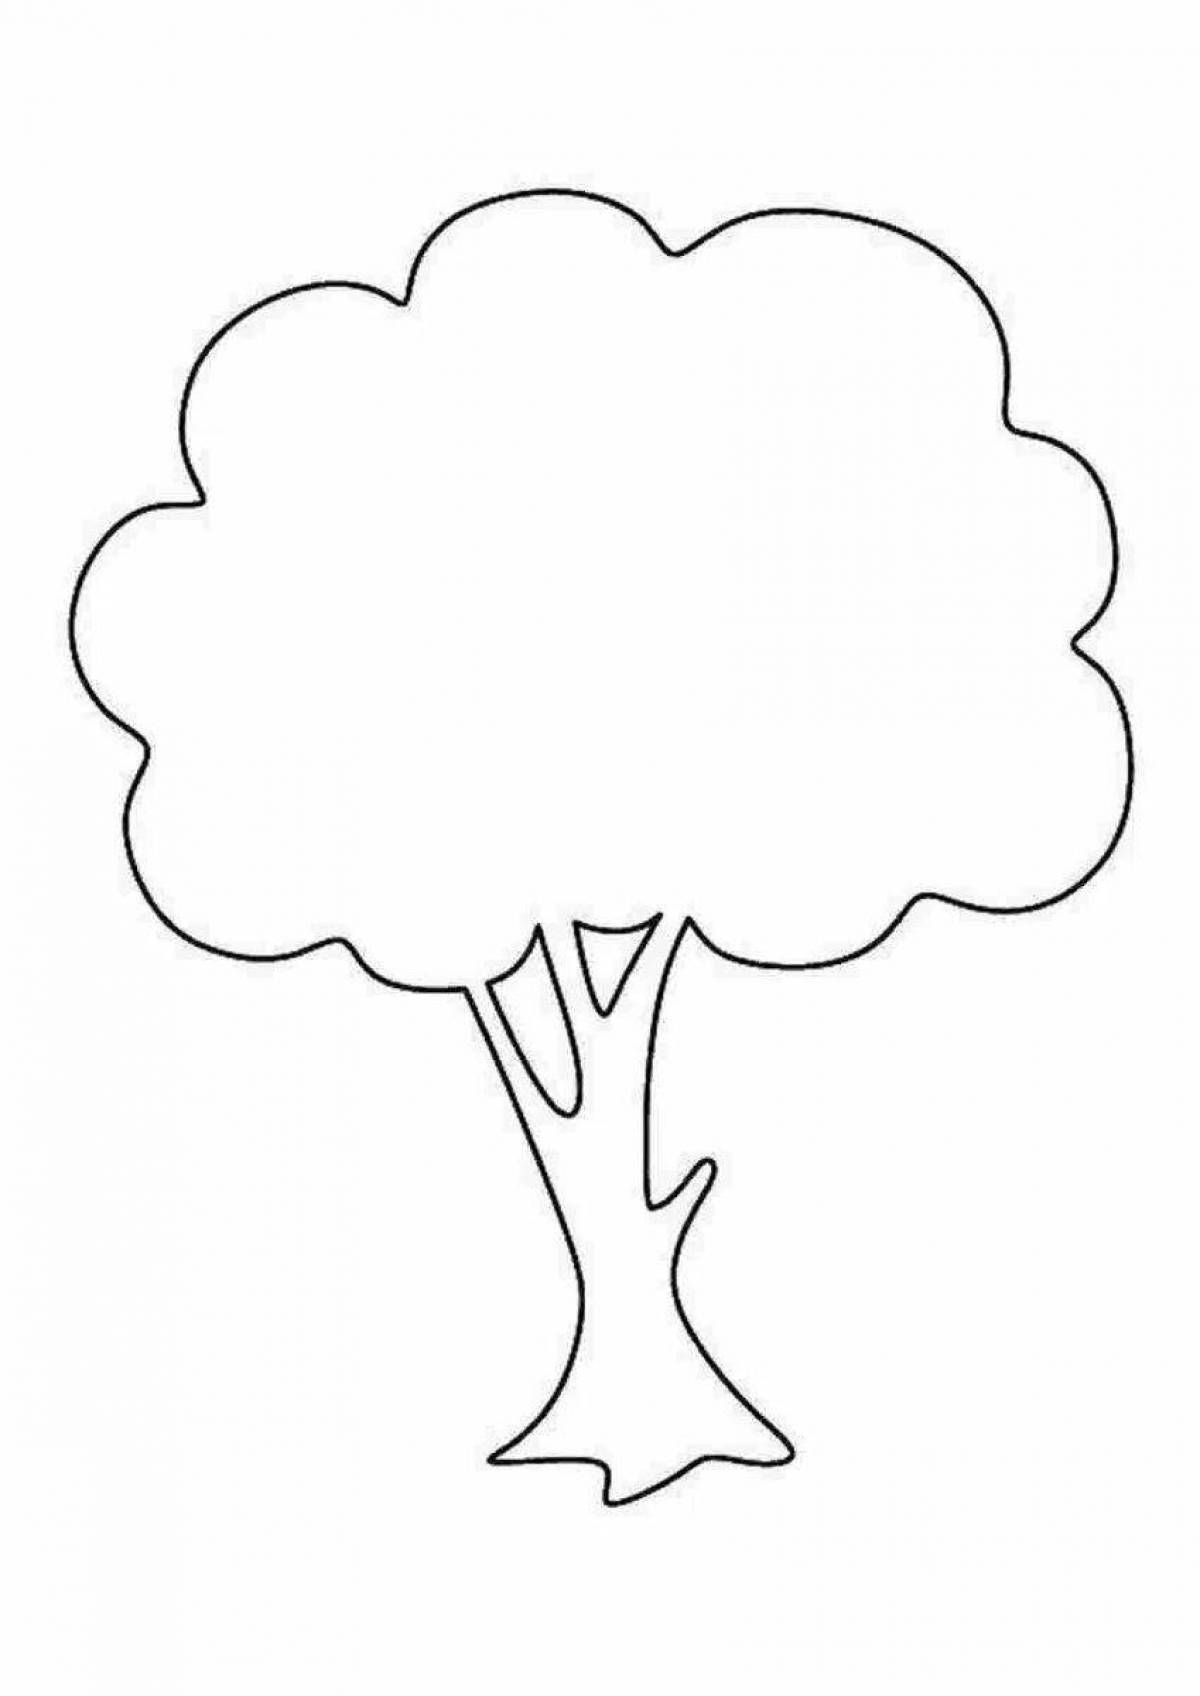 Как рисовать дерево?